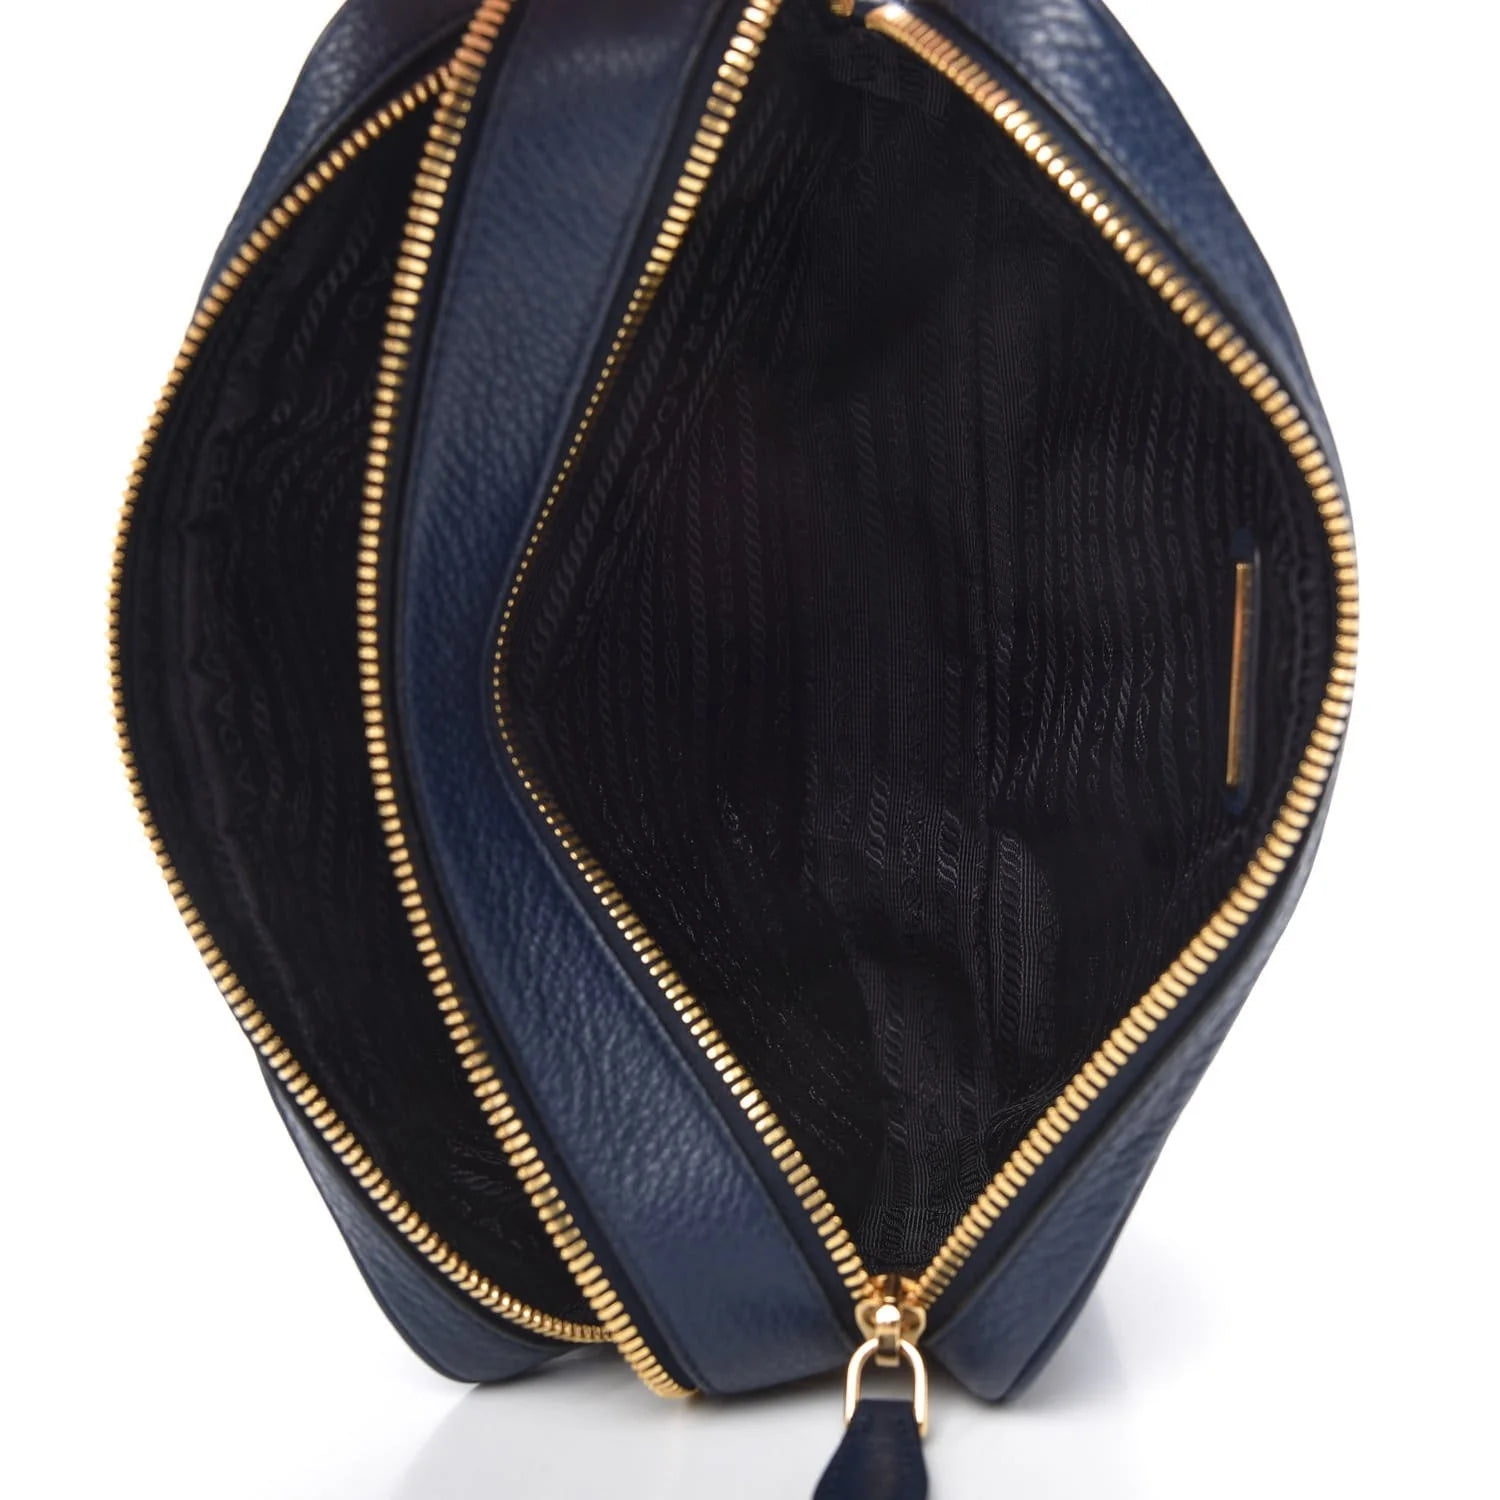 Prada Black Vitello Phenix Leather Double Zip Cross Body Bag 1BH079